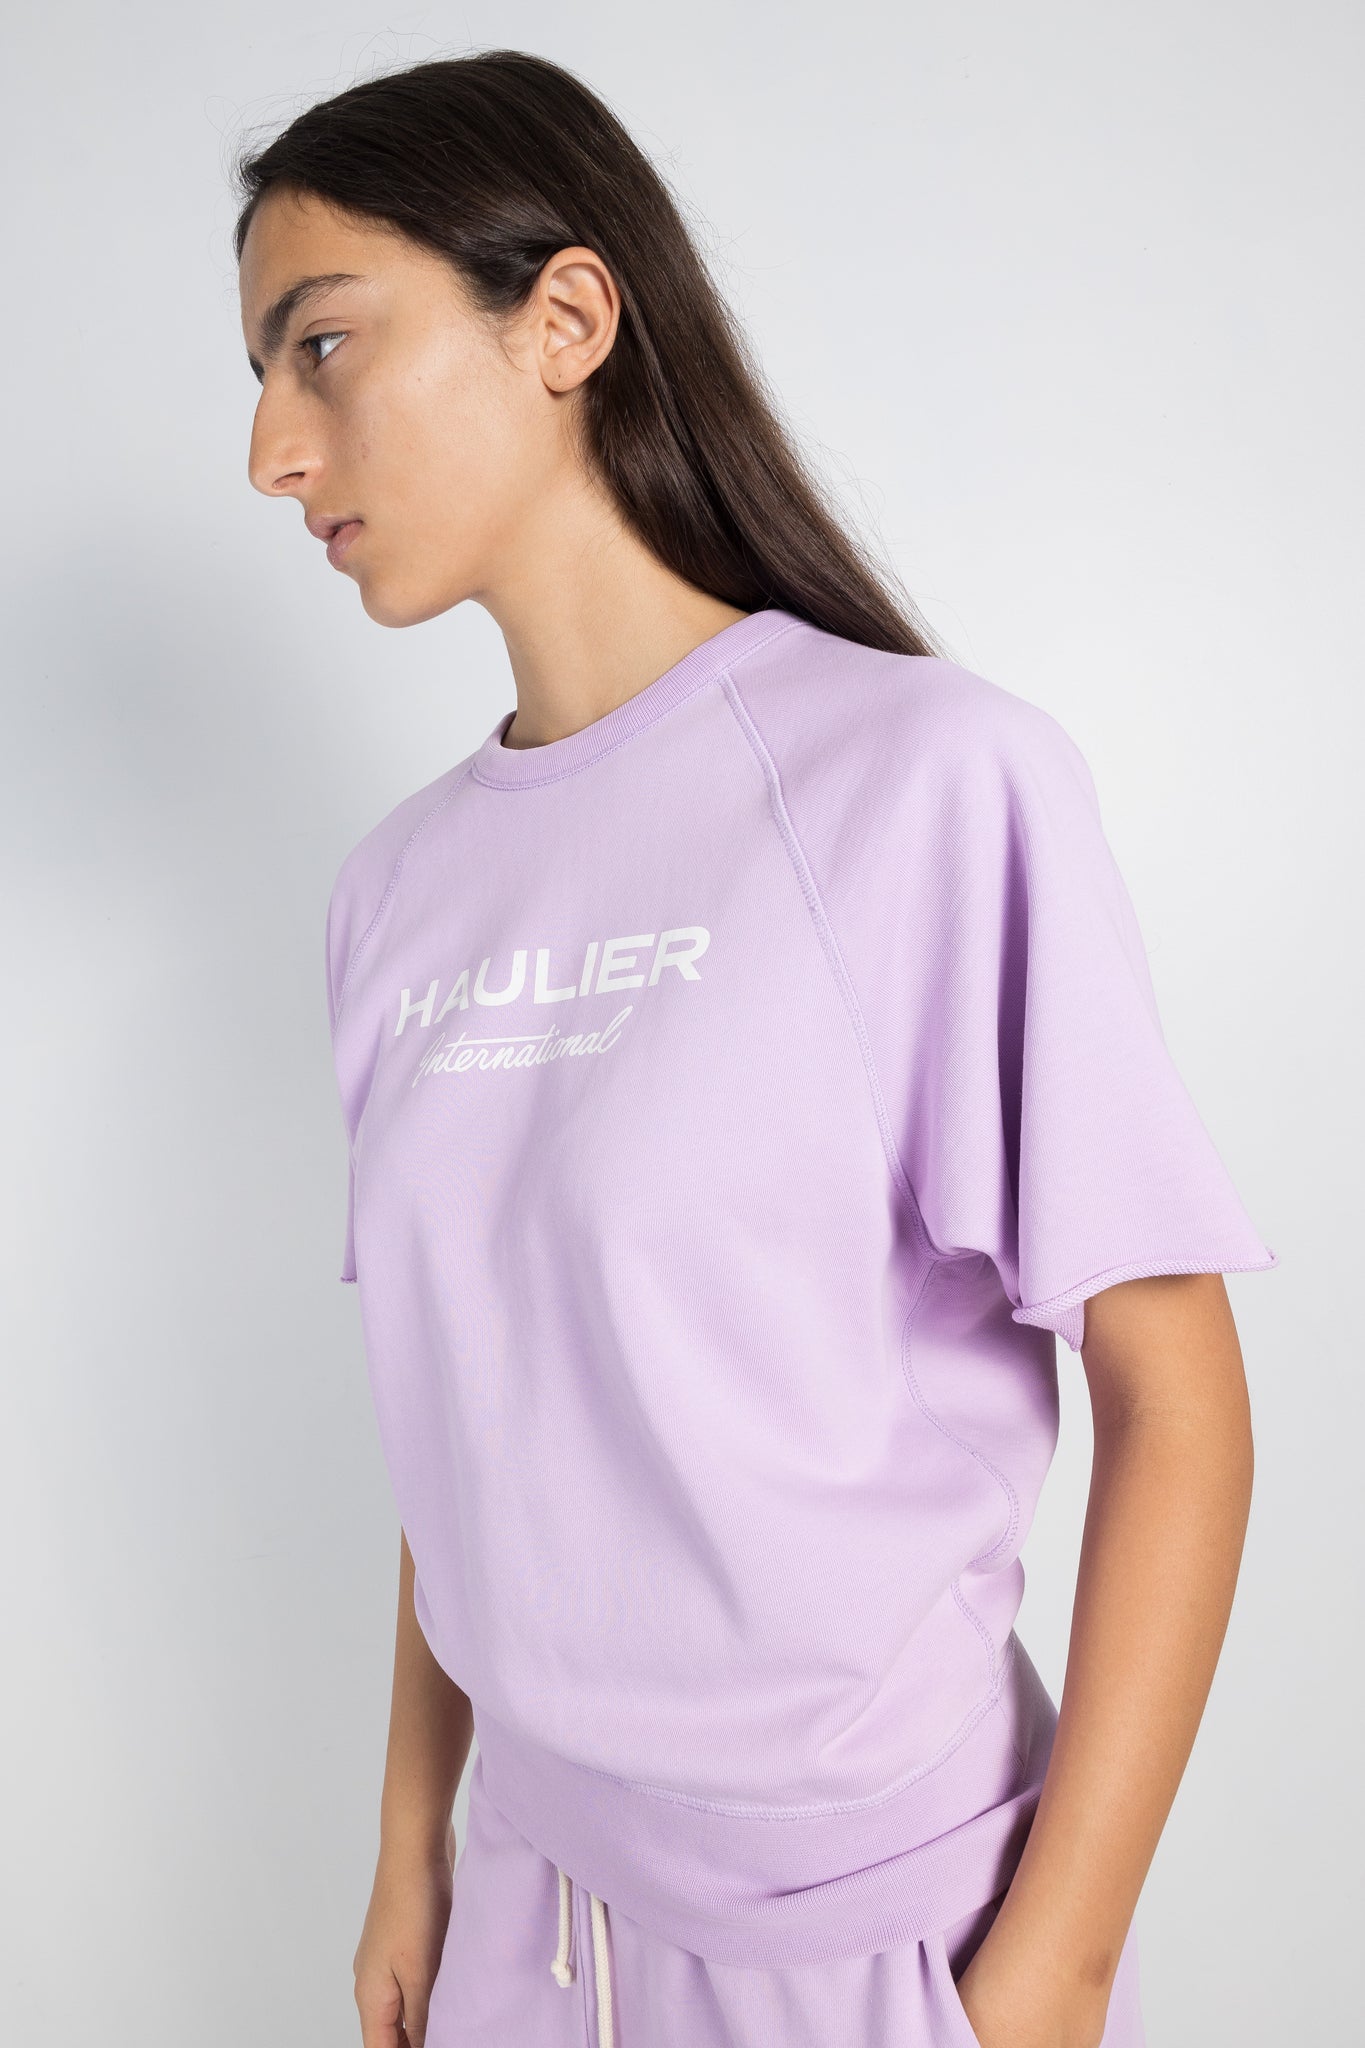 Womens Sweatshirt | Haulier Sly cut off sweat | The Standard Store